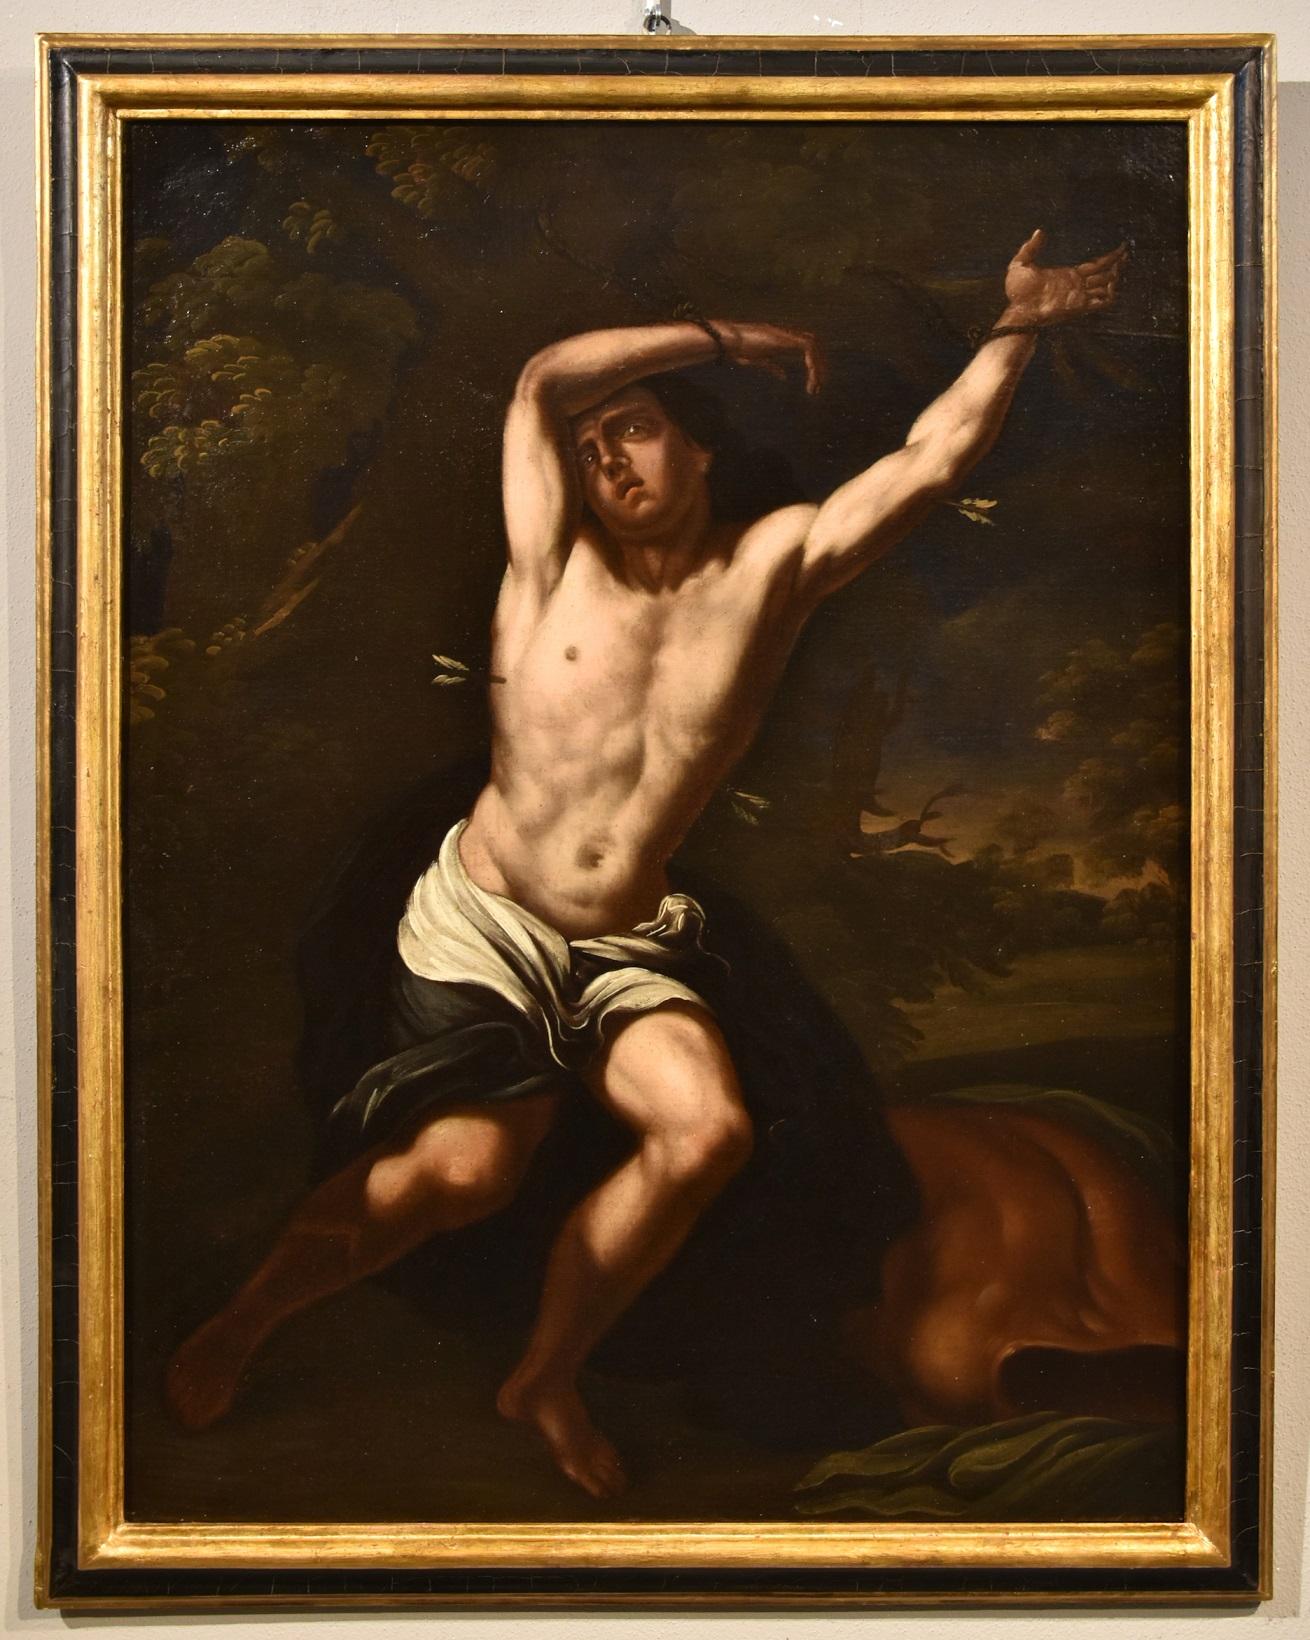 Portrait Painting Daniele Crespi (Busto Arsizio, 1597-1600 - Milan 1630) - Peinture à l'huile sur toile du maître ancien de San Sebastian Crespi, XVIIe siècle, Michel-Ange